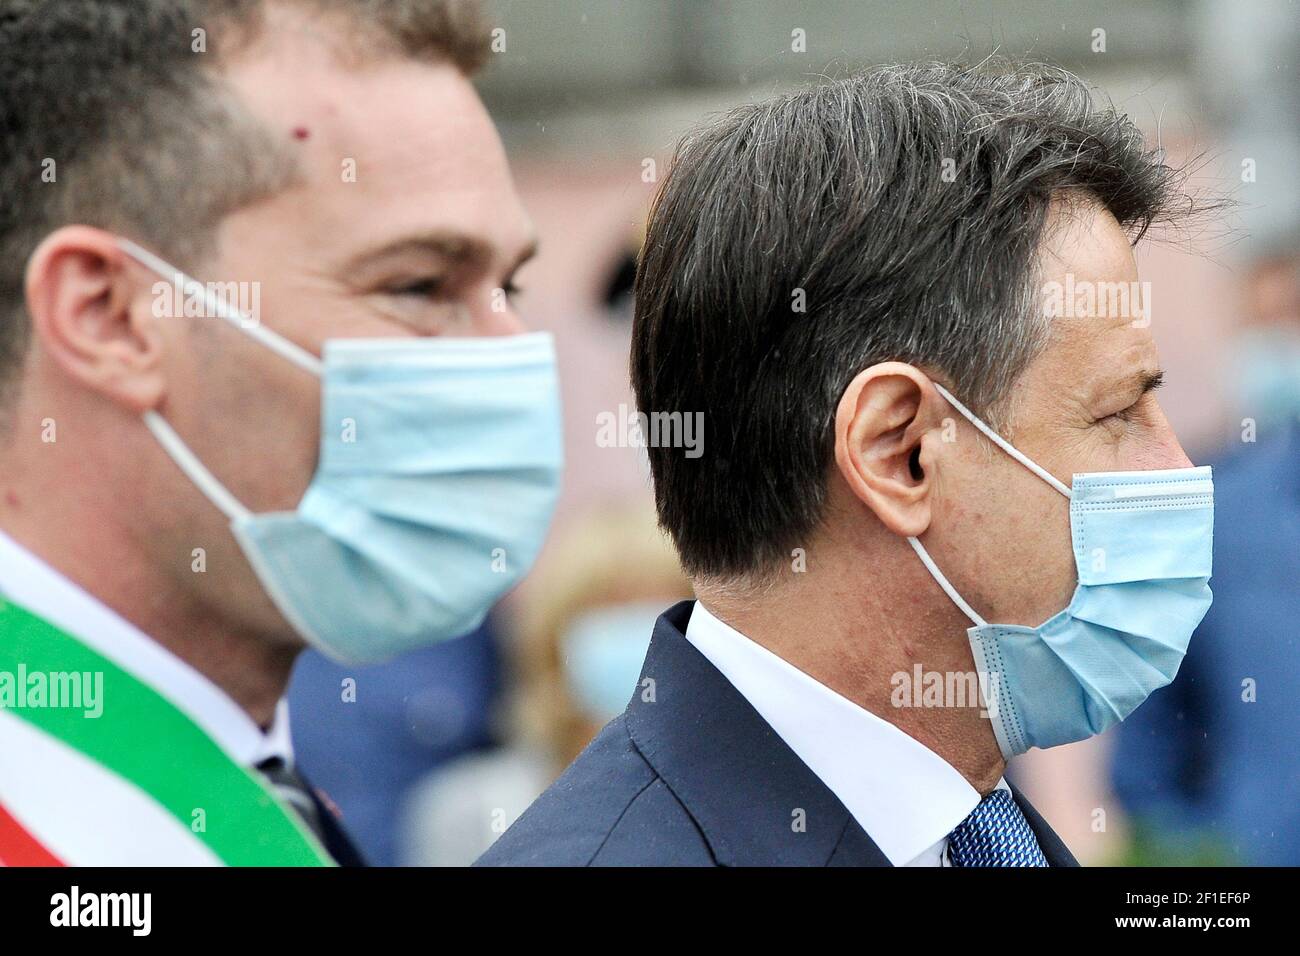 Giuseppe Conte Presidente del Consiglio dei Ministri della Repubblica Italiana con maschera anti-coronavirus, durante una visita al 'Francesco Gesuè' Foto Stock